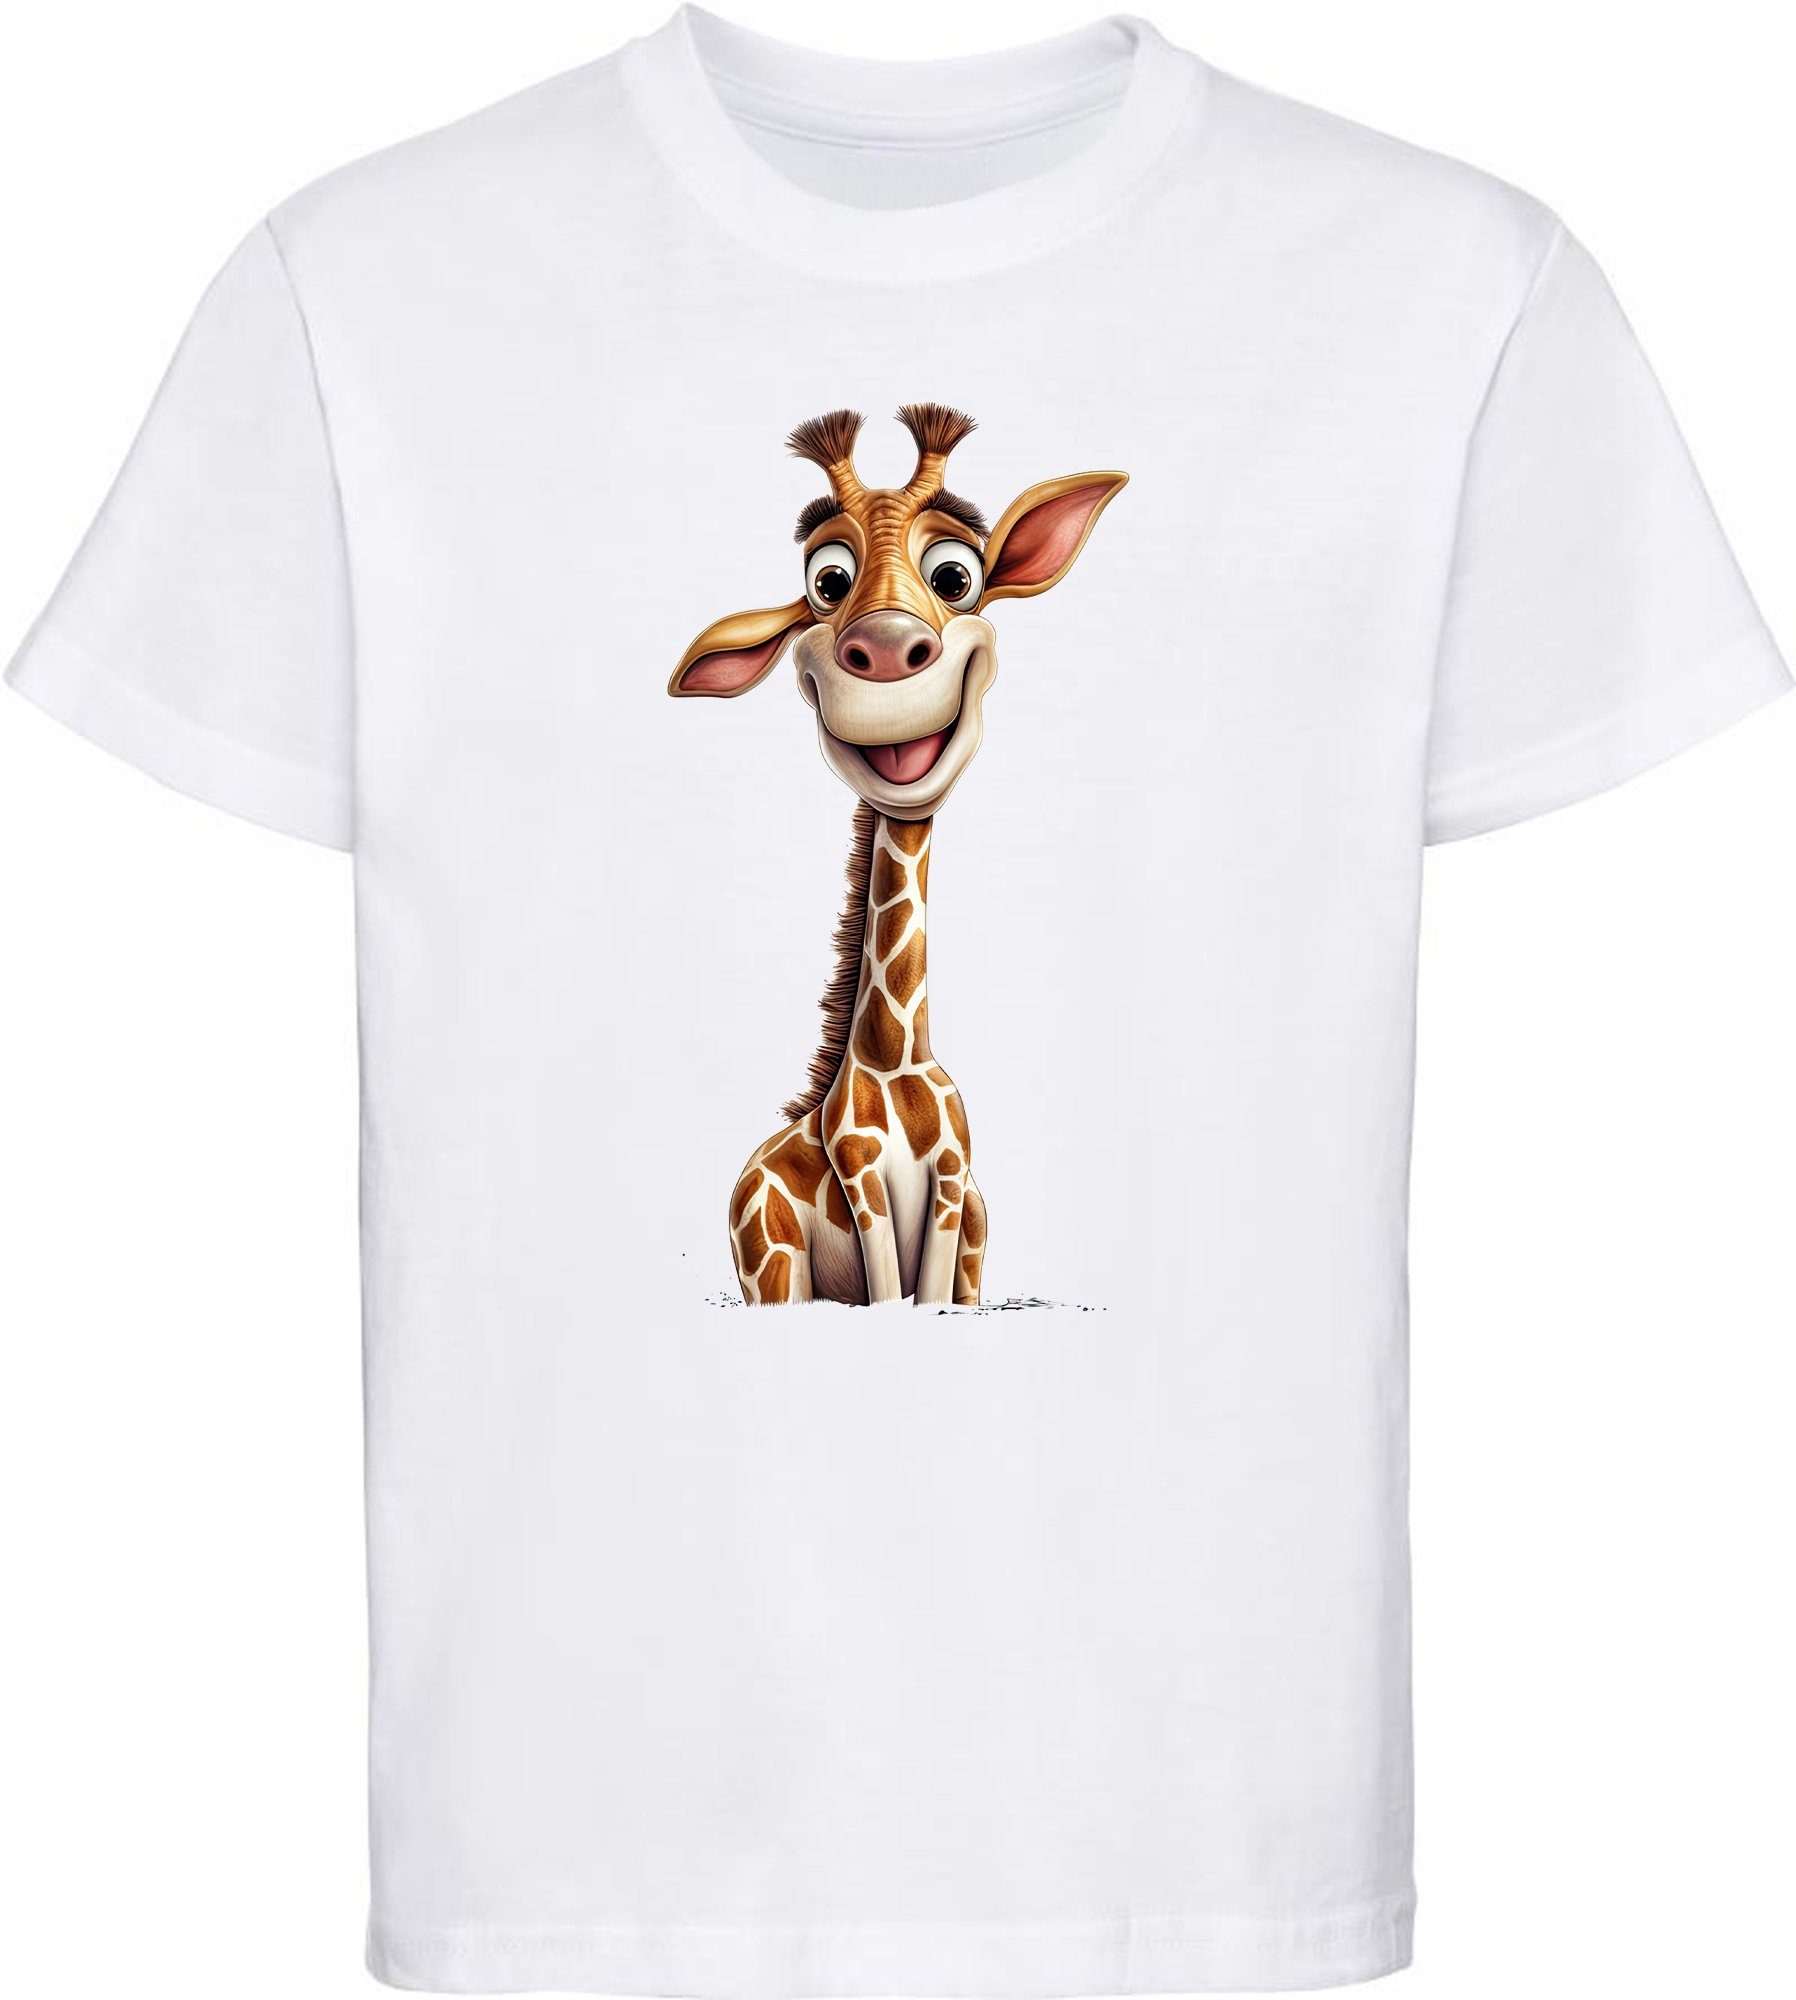 MyDesign24 T-Shirt Kinder Wildtier Print Shirt bedruckt - Baby Giraffe Baumwollshirt mit Aufdruck, i273 weiss | T-Shirts